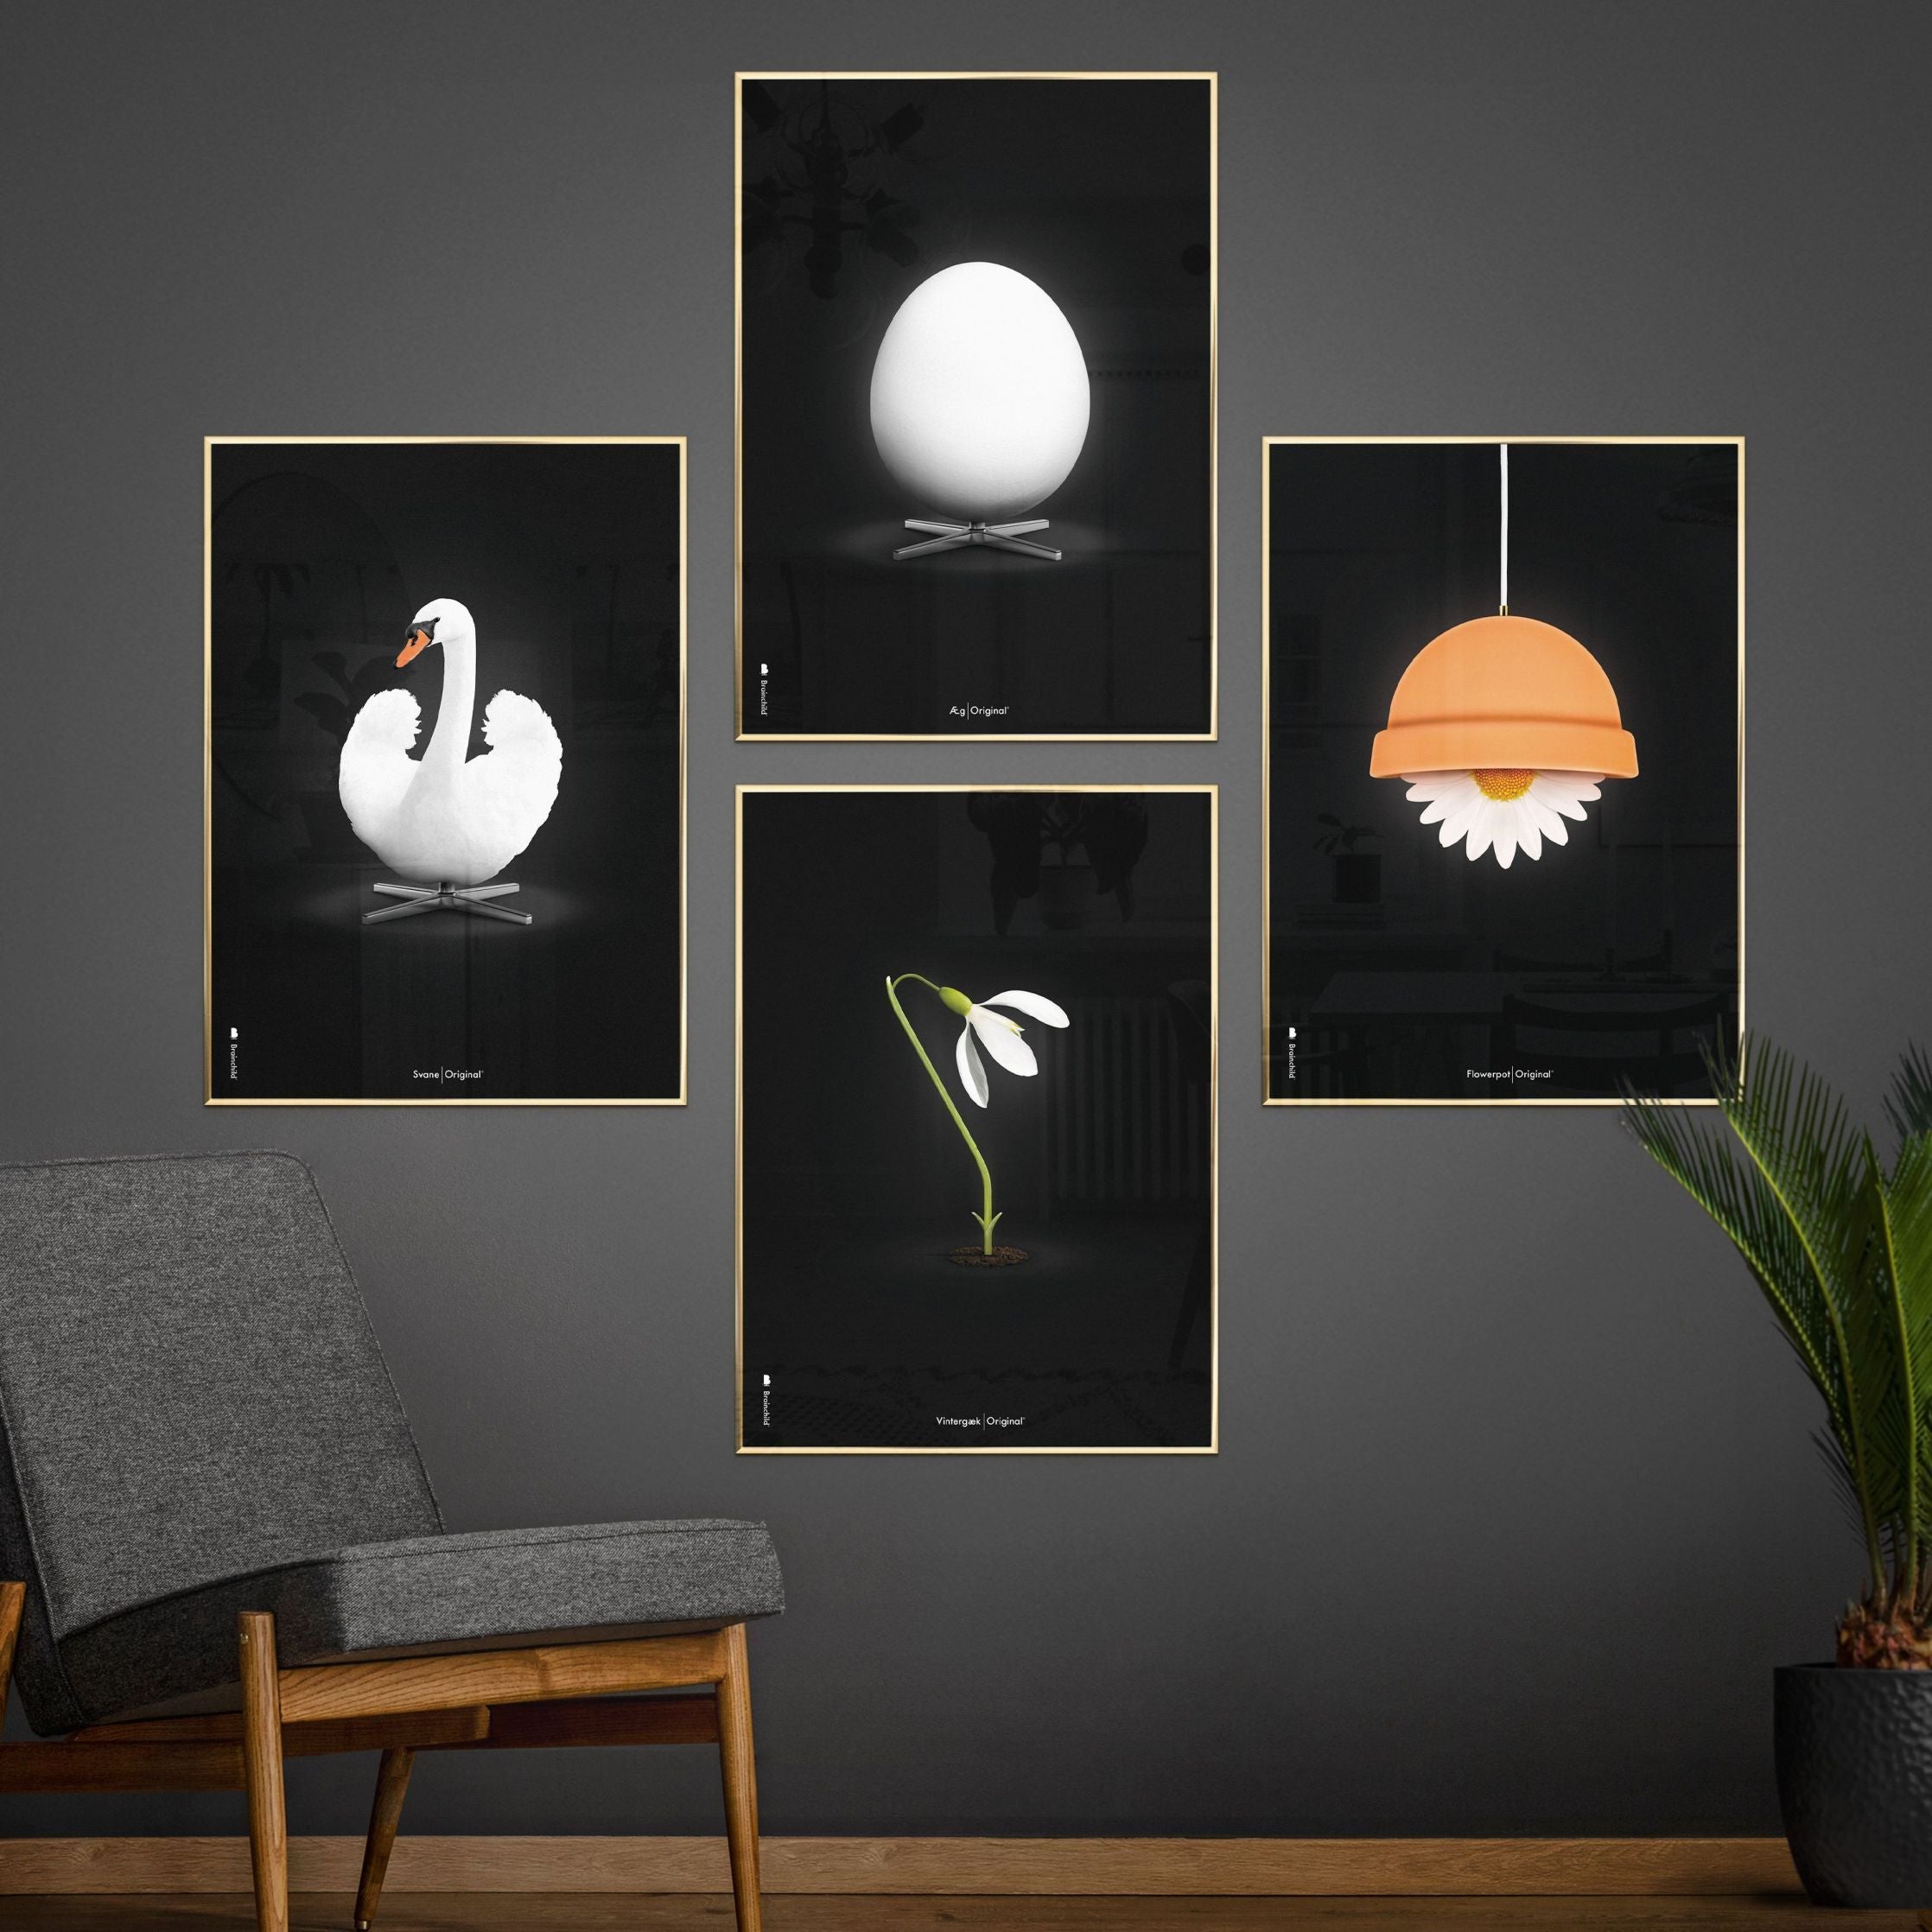 Poster classico di SnowDrop Brainchild, cornice in legno scuro A5, sfondo nero